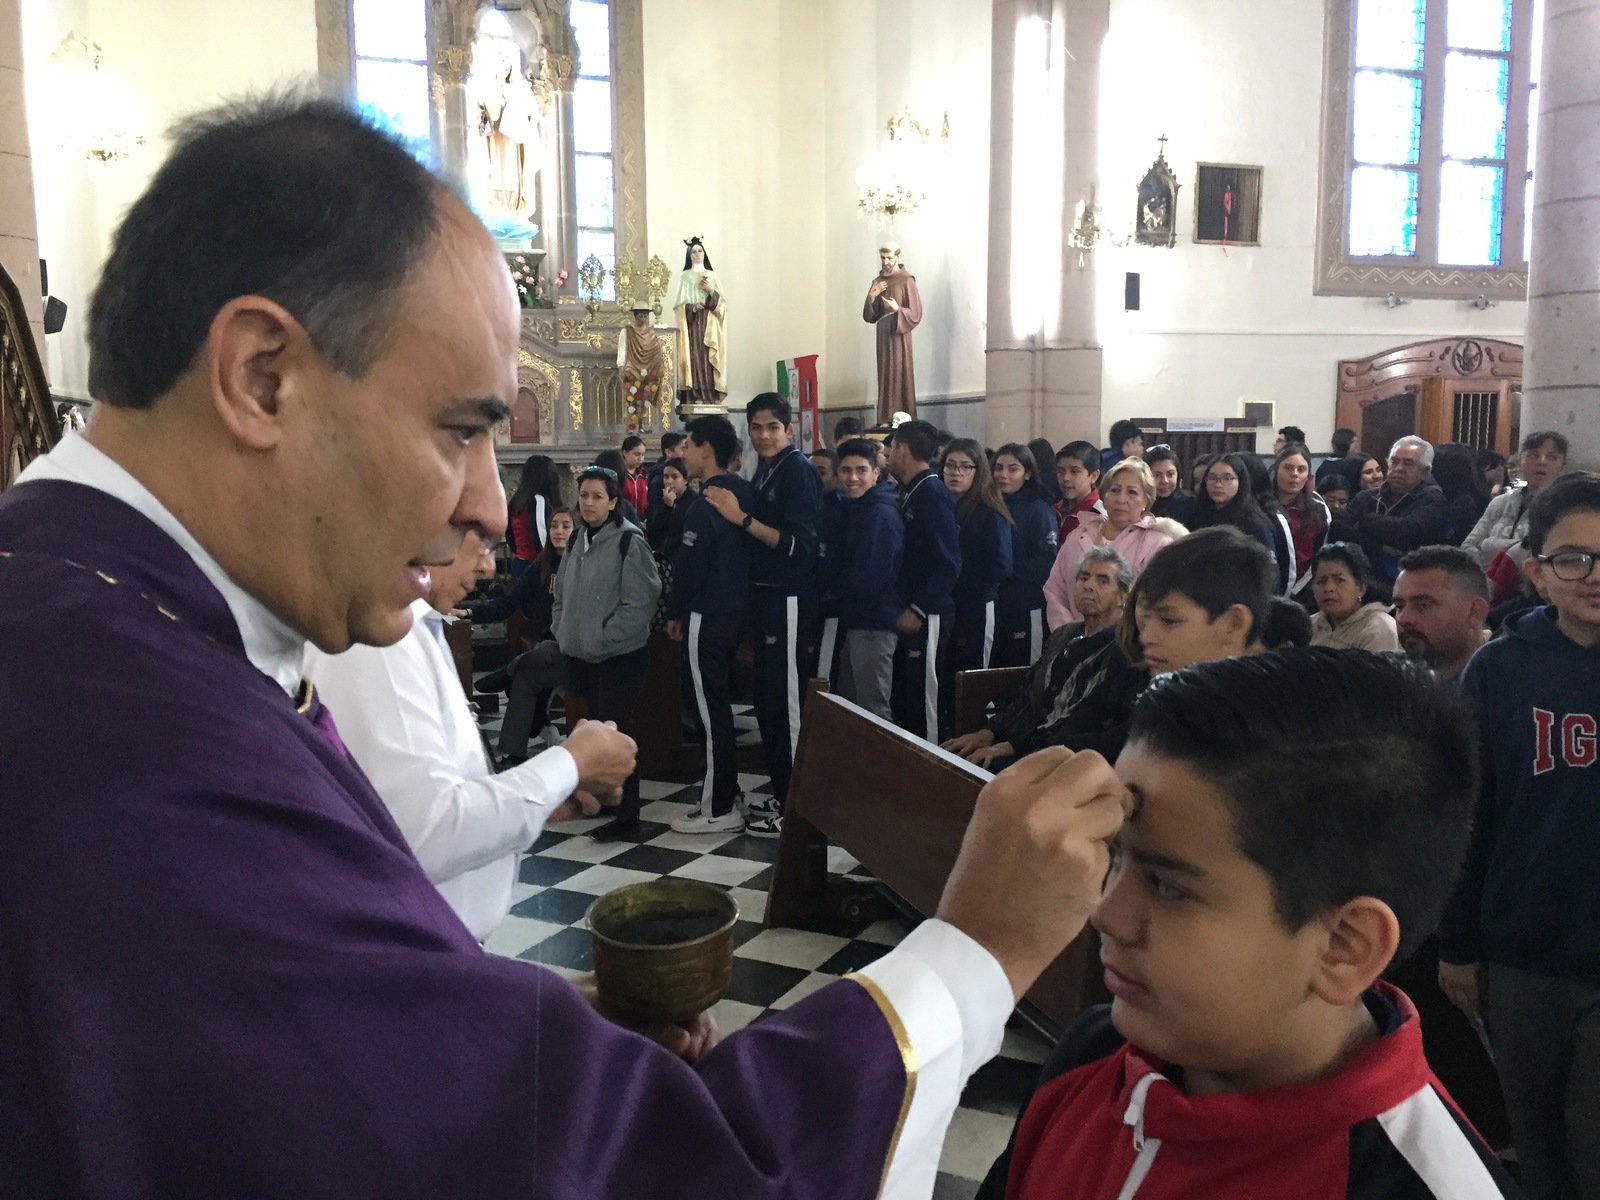 Como una iglesia abierta y que pide justicia, calificó el Administrador de la Diócesis de Torreón, el que se hayan publicado las líneas de protección a menores. (GUADALUPE MIRANDA)